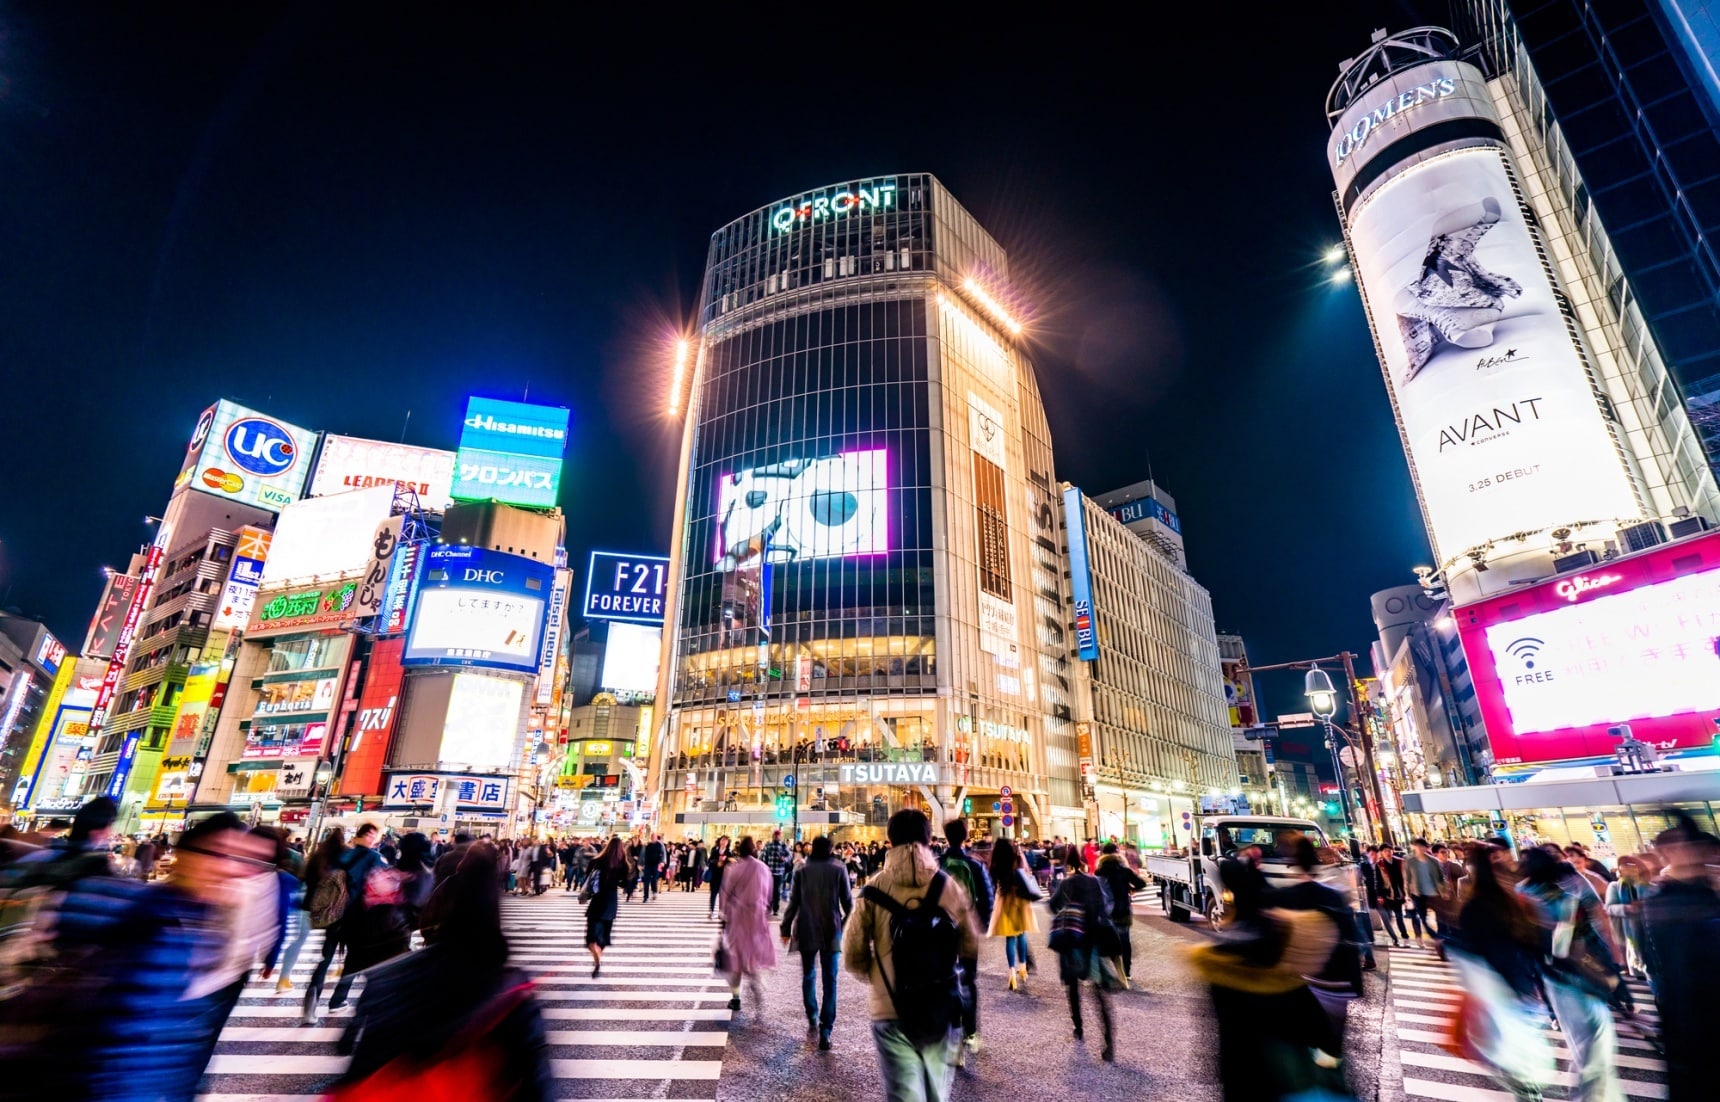 【日本觀察】城市越大人心越遠？從「送別會」中窺見日本社會的人情文化